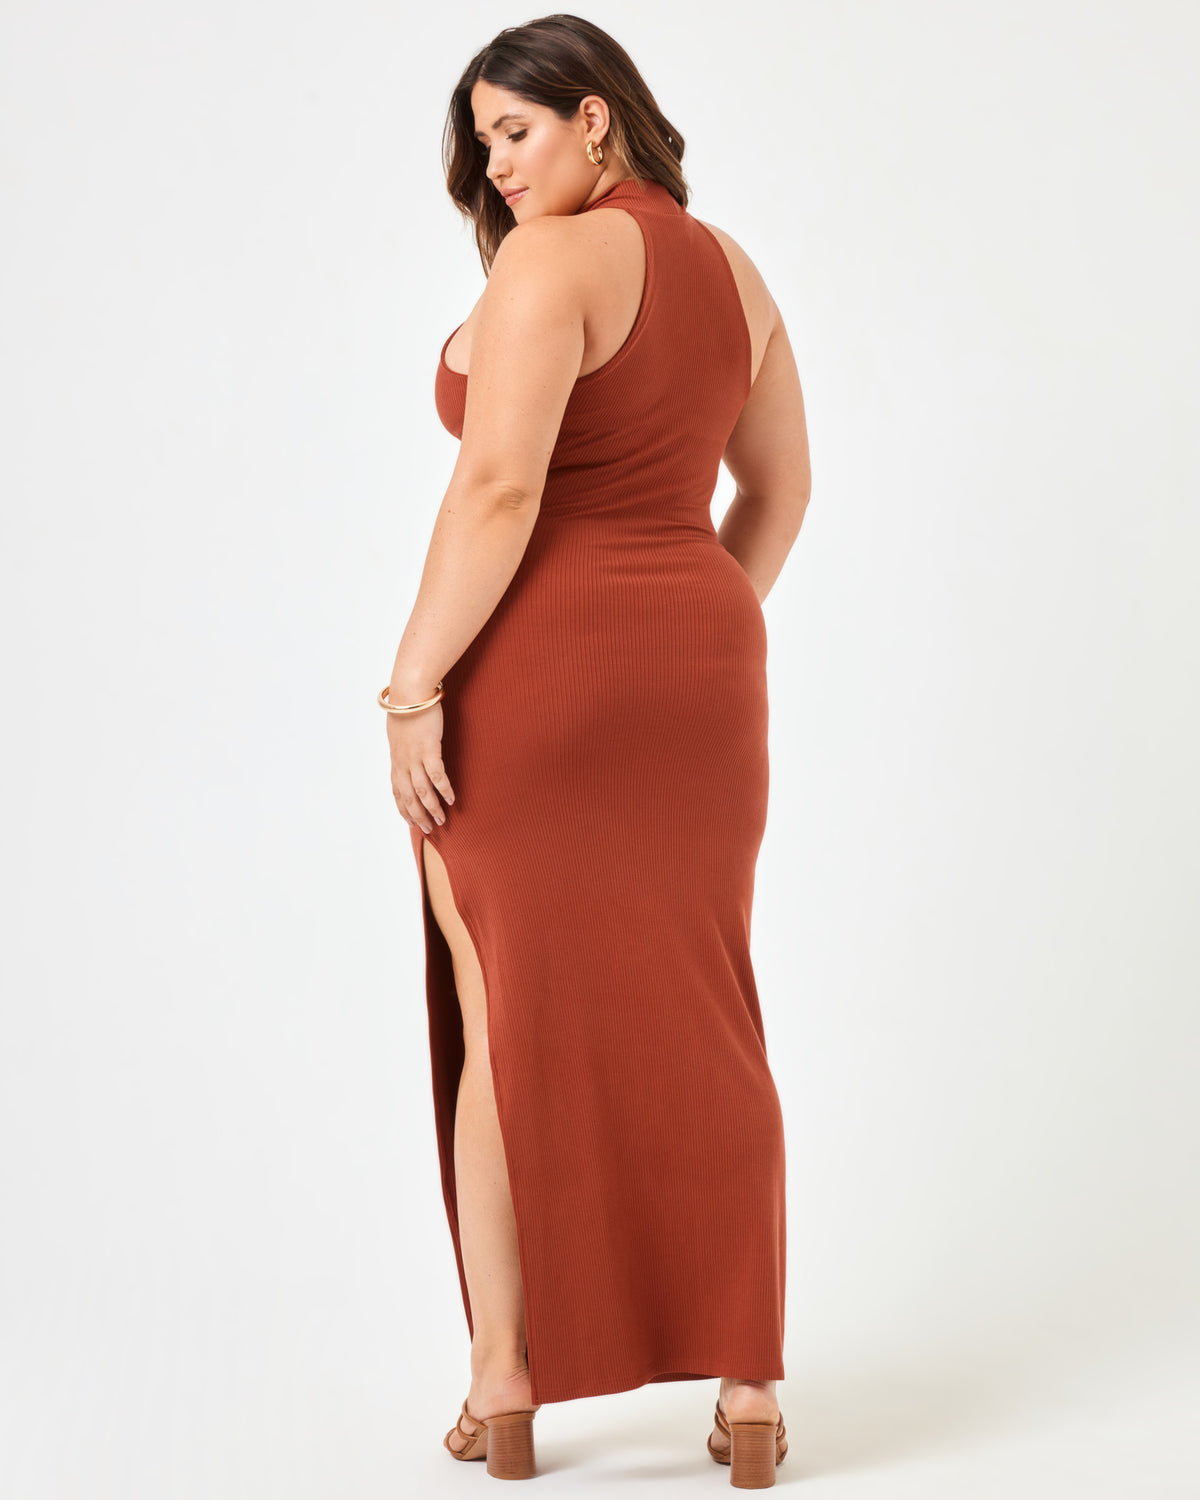 Cherie Dress - Clay Clay | Model: Jessica (size: XL)